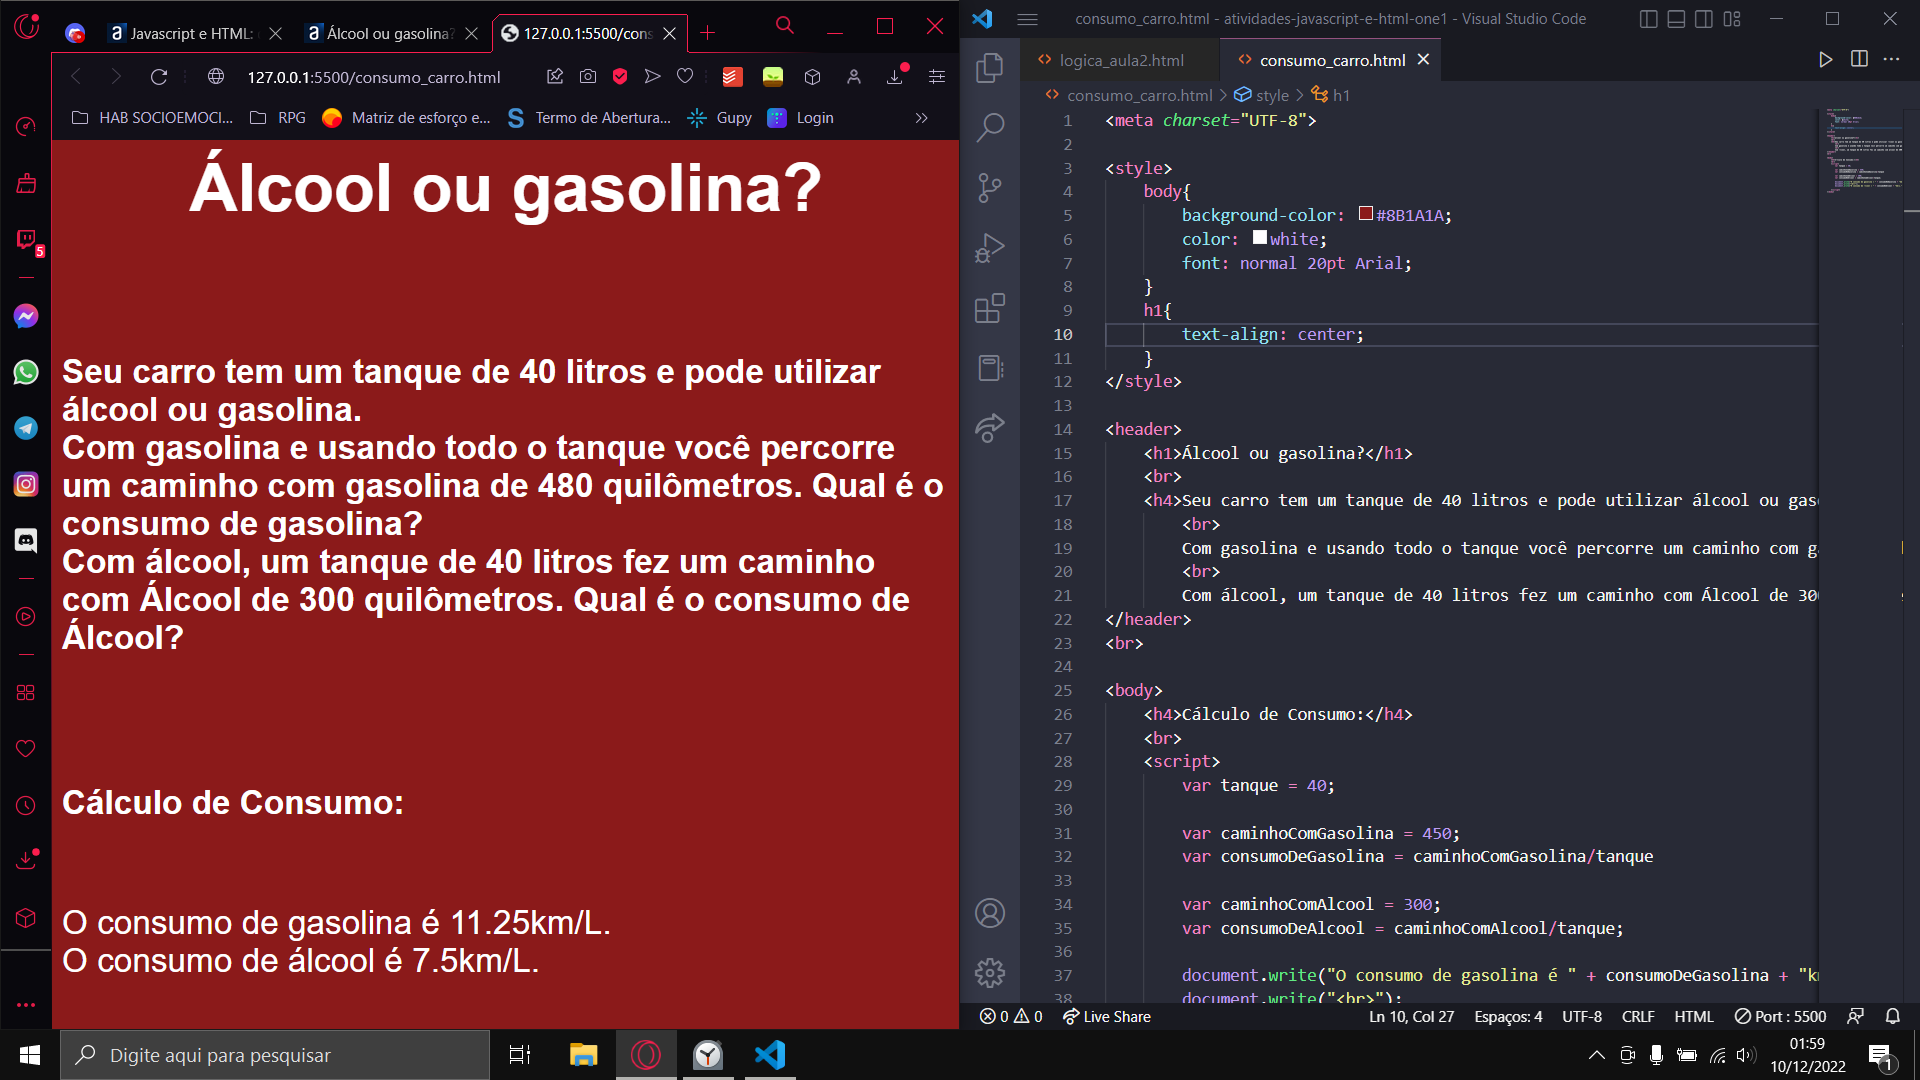 Printscreen da minha tela, onde do lado esquerdo temos a tela de navegador com o código rodando, sendo o texto na cor branca e a cor de fundo vermelho escuro. Já do lado direito, temos a tela do VS Code com o código em HTML, CSS e JavaScript do exercício proposto.